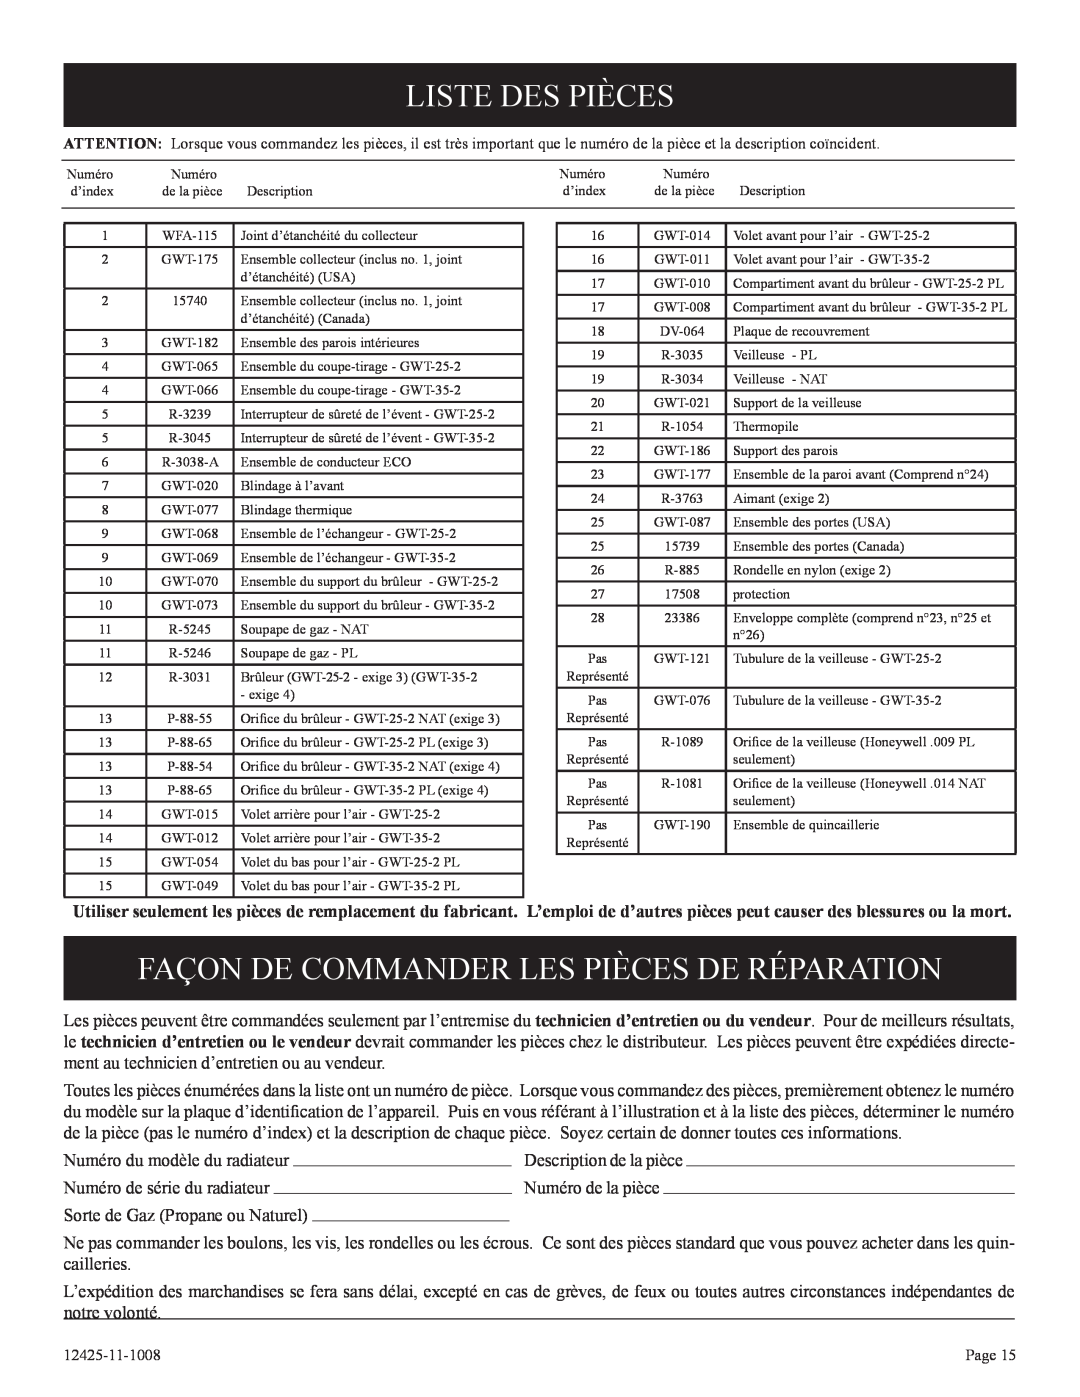 Empire Products GWT-35-2(SG, GWT-25-2(SG Liste Des Pièces, Façon De Commander Les Pièces De Réparation 